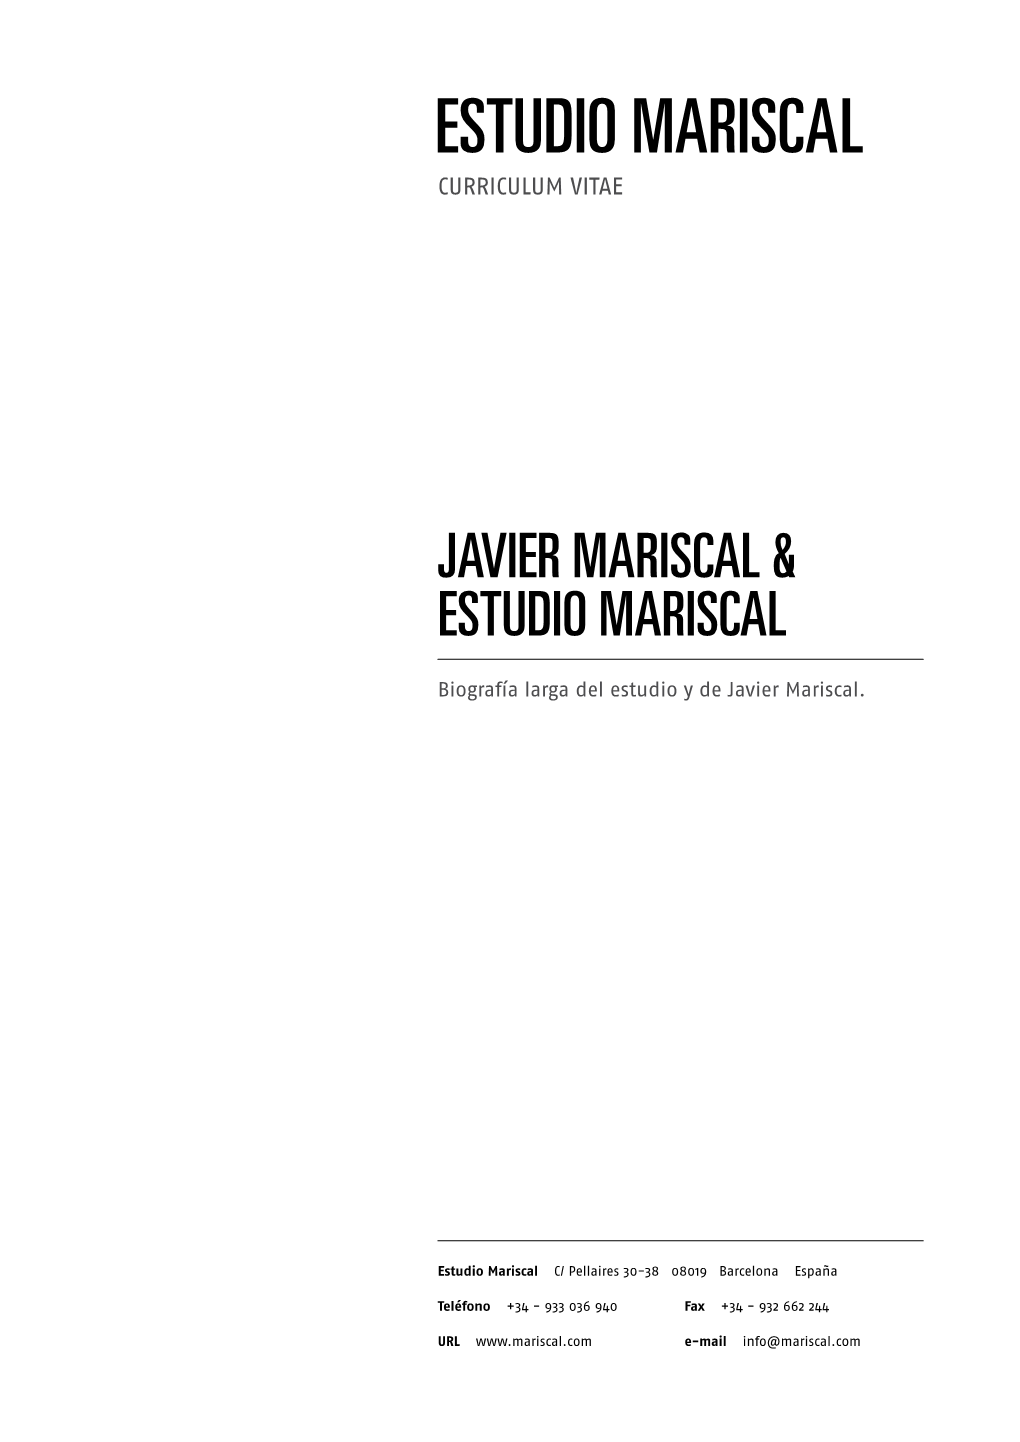 JAVIER MARISCAL & Estudio MARISCAL